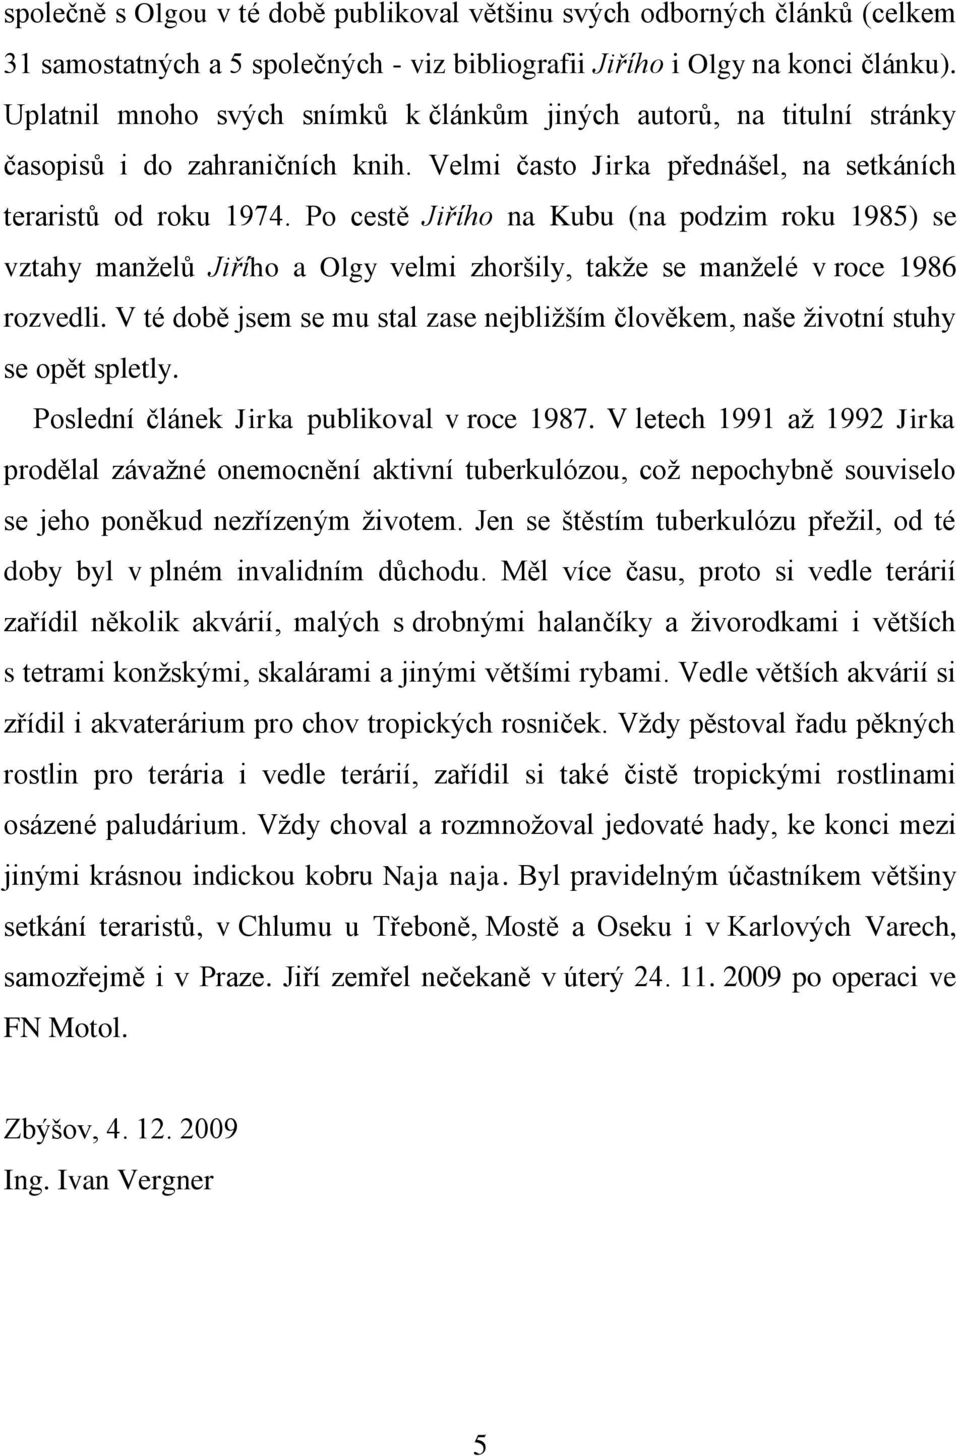 Po cestě Jiřího na Kubu (na podzim roku 1985) se vztahy manţelů Jiřího a Olgy velmi zhoršily, takţe se manţelé v roce 1986 rozvedli.